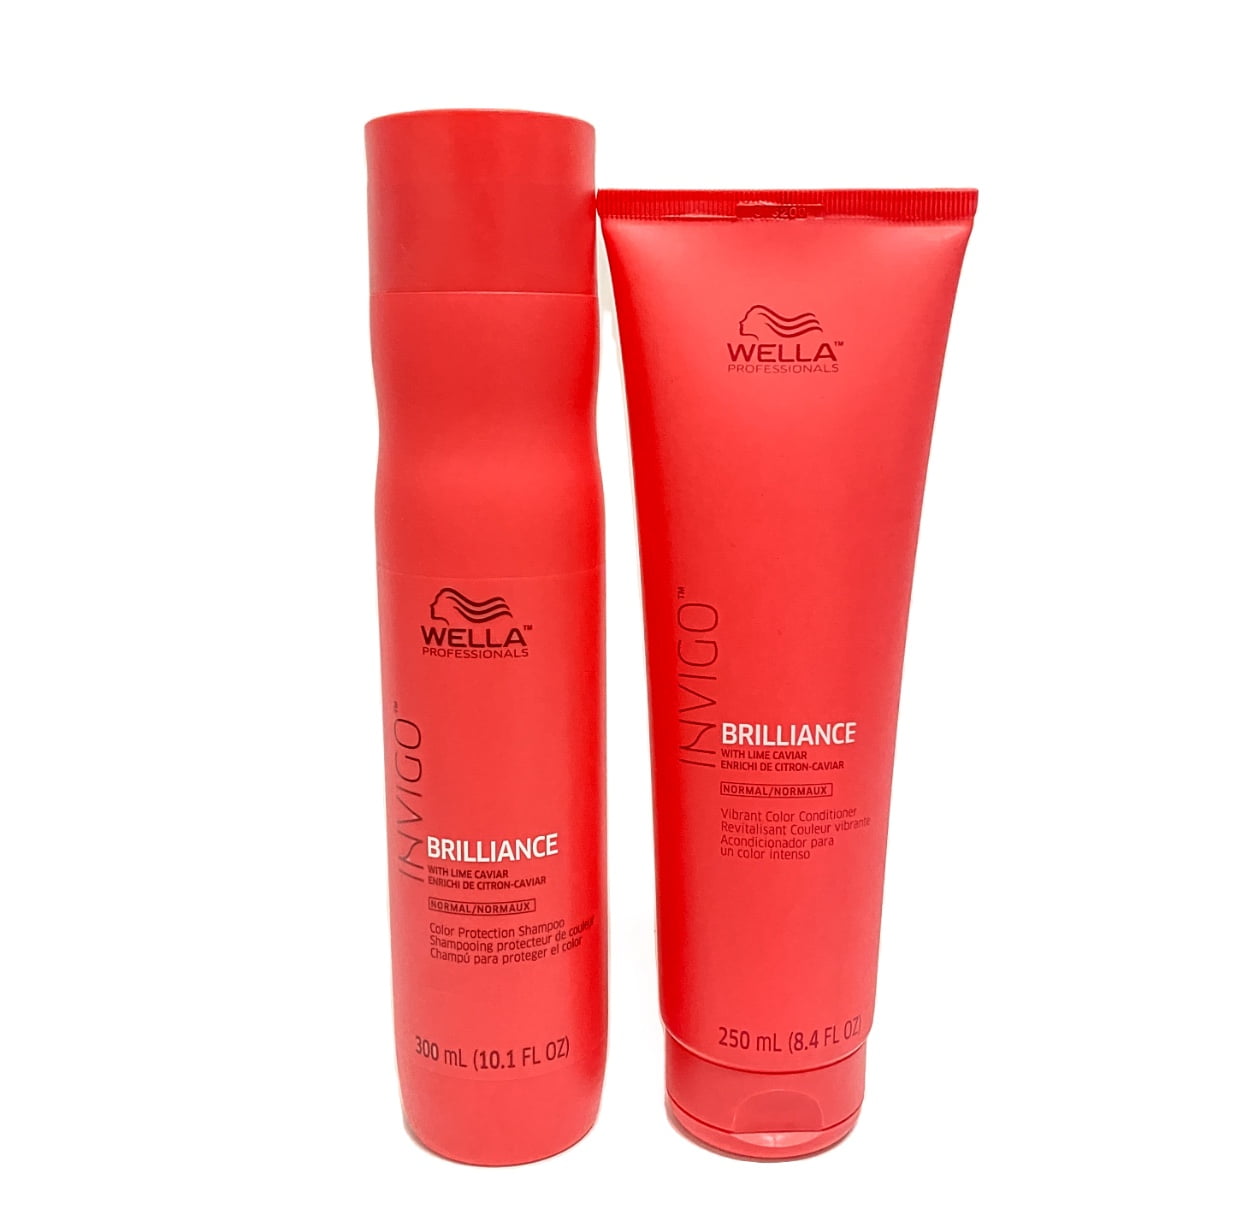 Wella Invigo Brilliance Normal/Fine Shampoo(10.1fl.oz) Conditioner(8.4fl.oz) Duo - Walmart.com